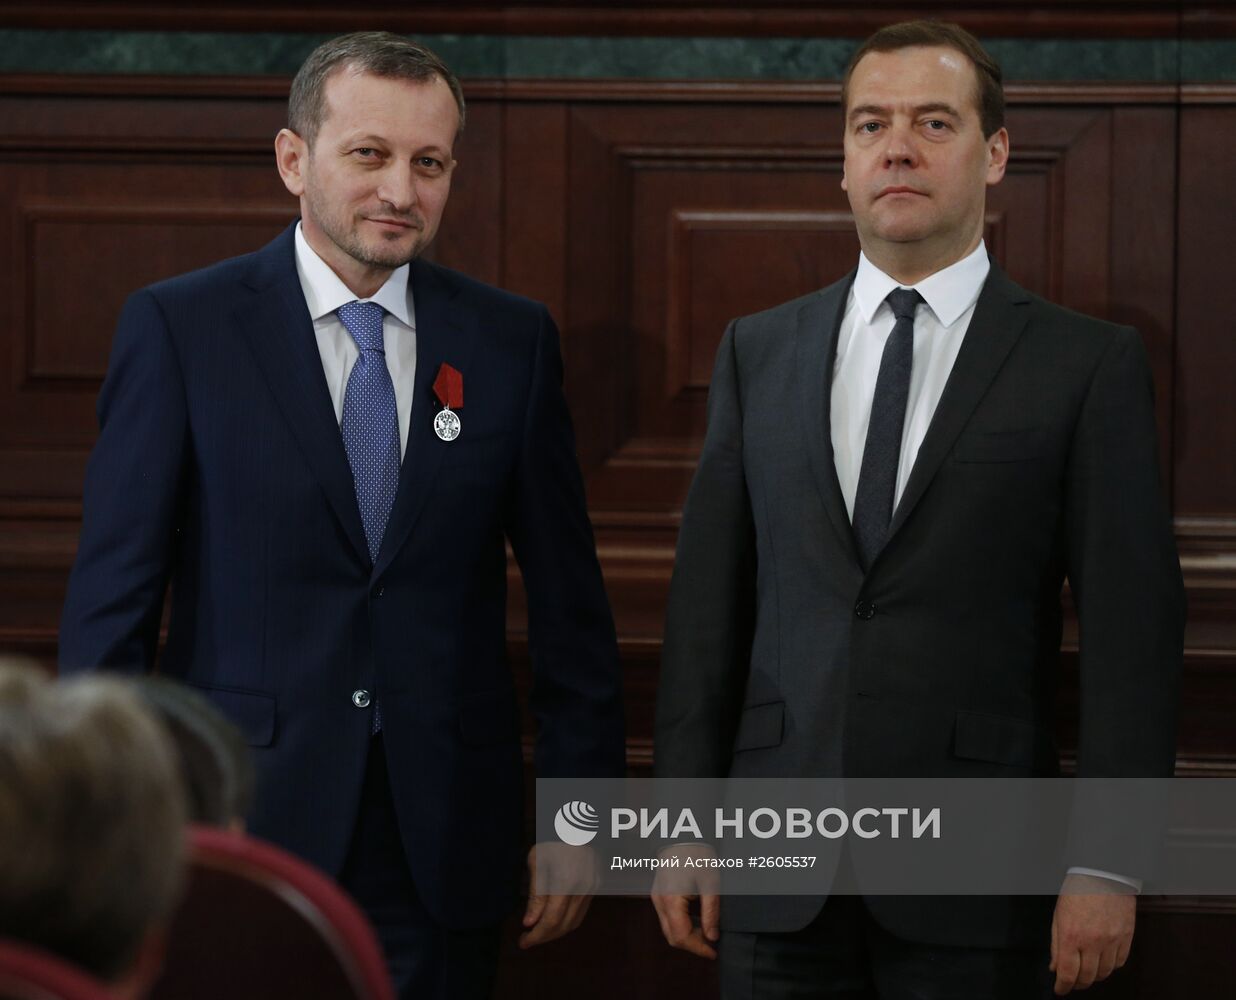 Премьер-министр РФ Д.Медведев на расширенном заседании коллегии министерства финансов РФ